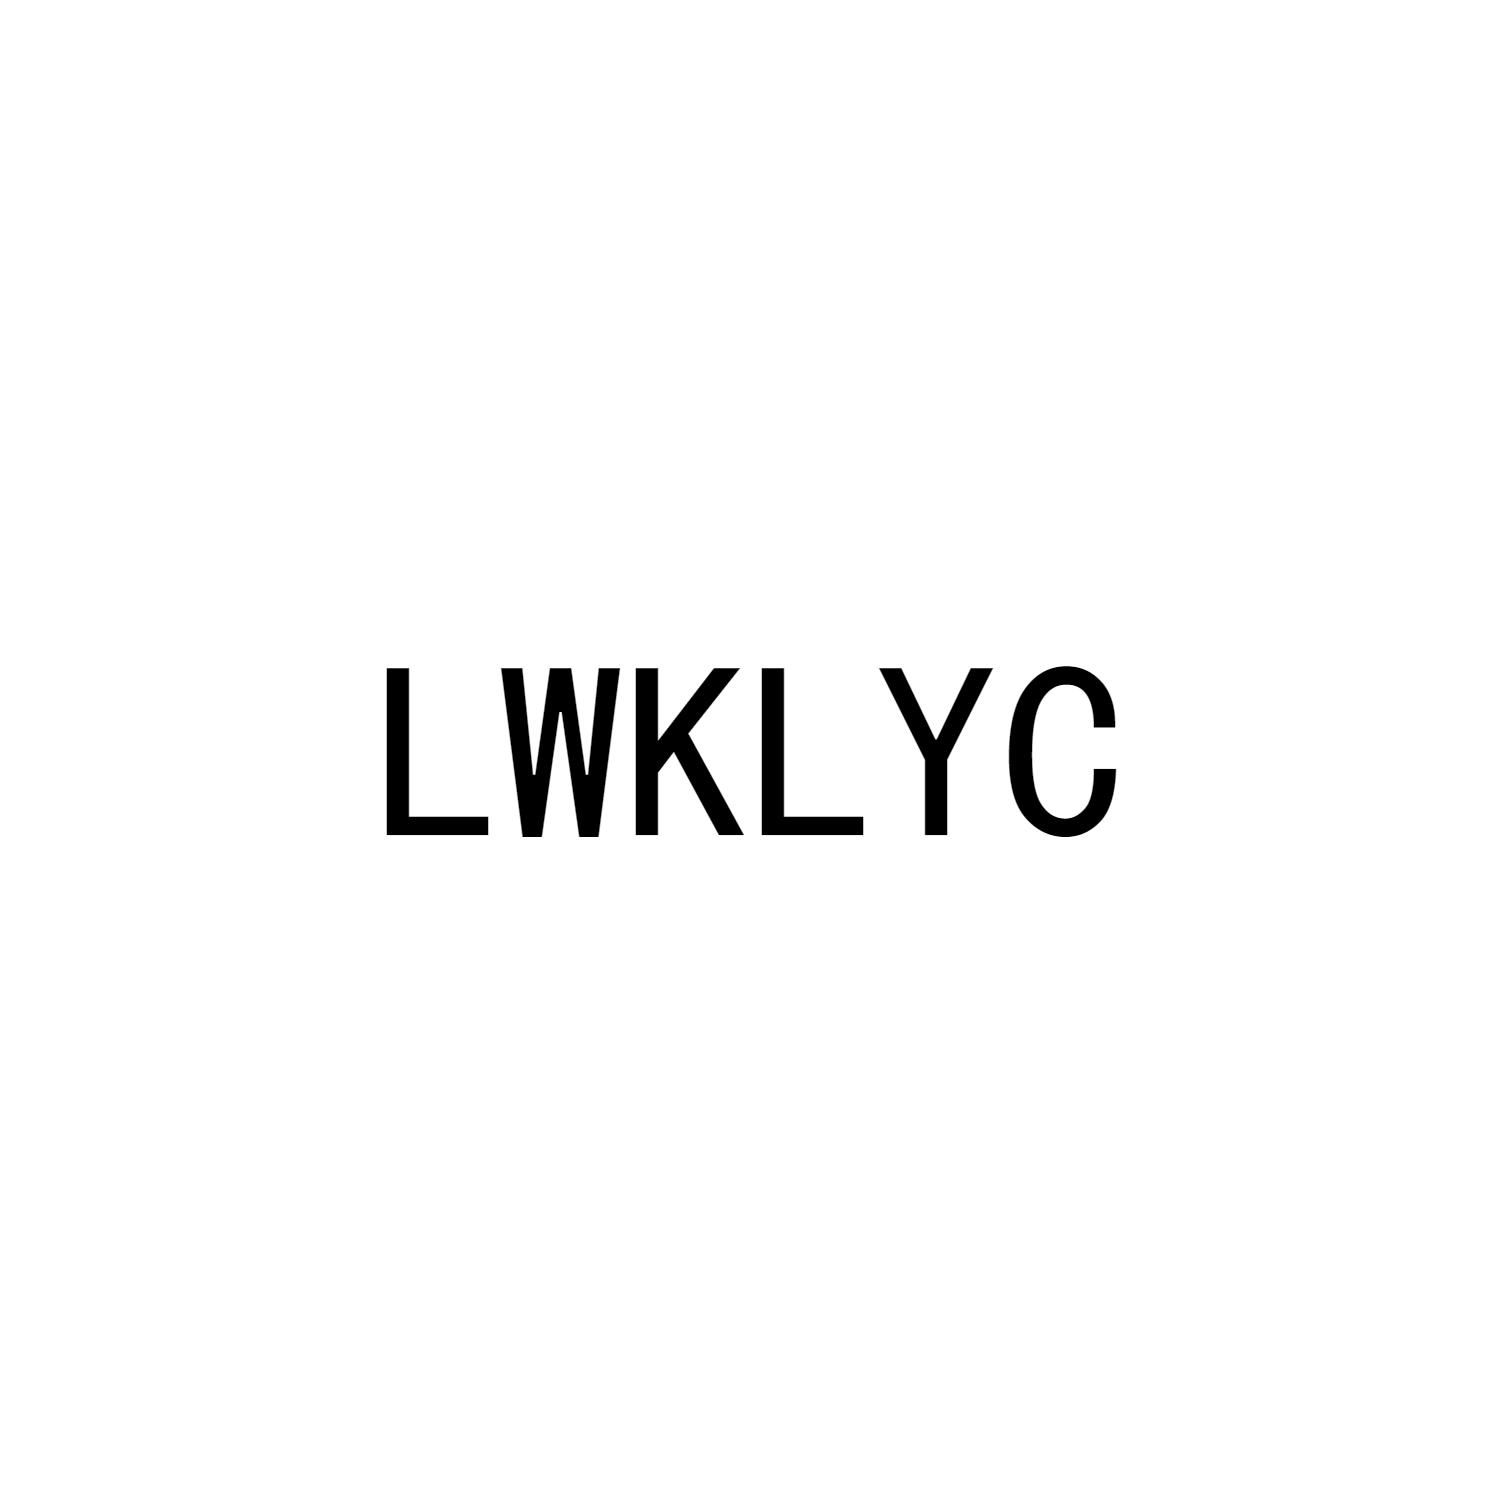 LWKLYC